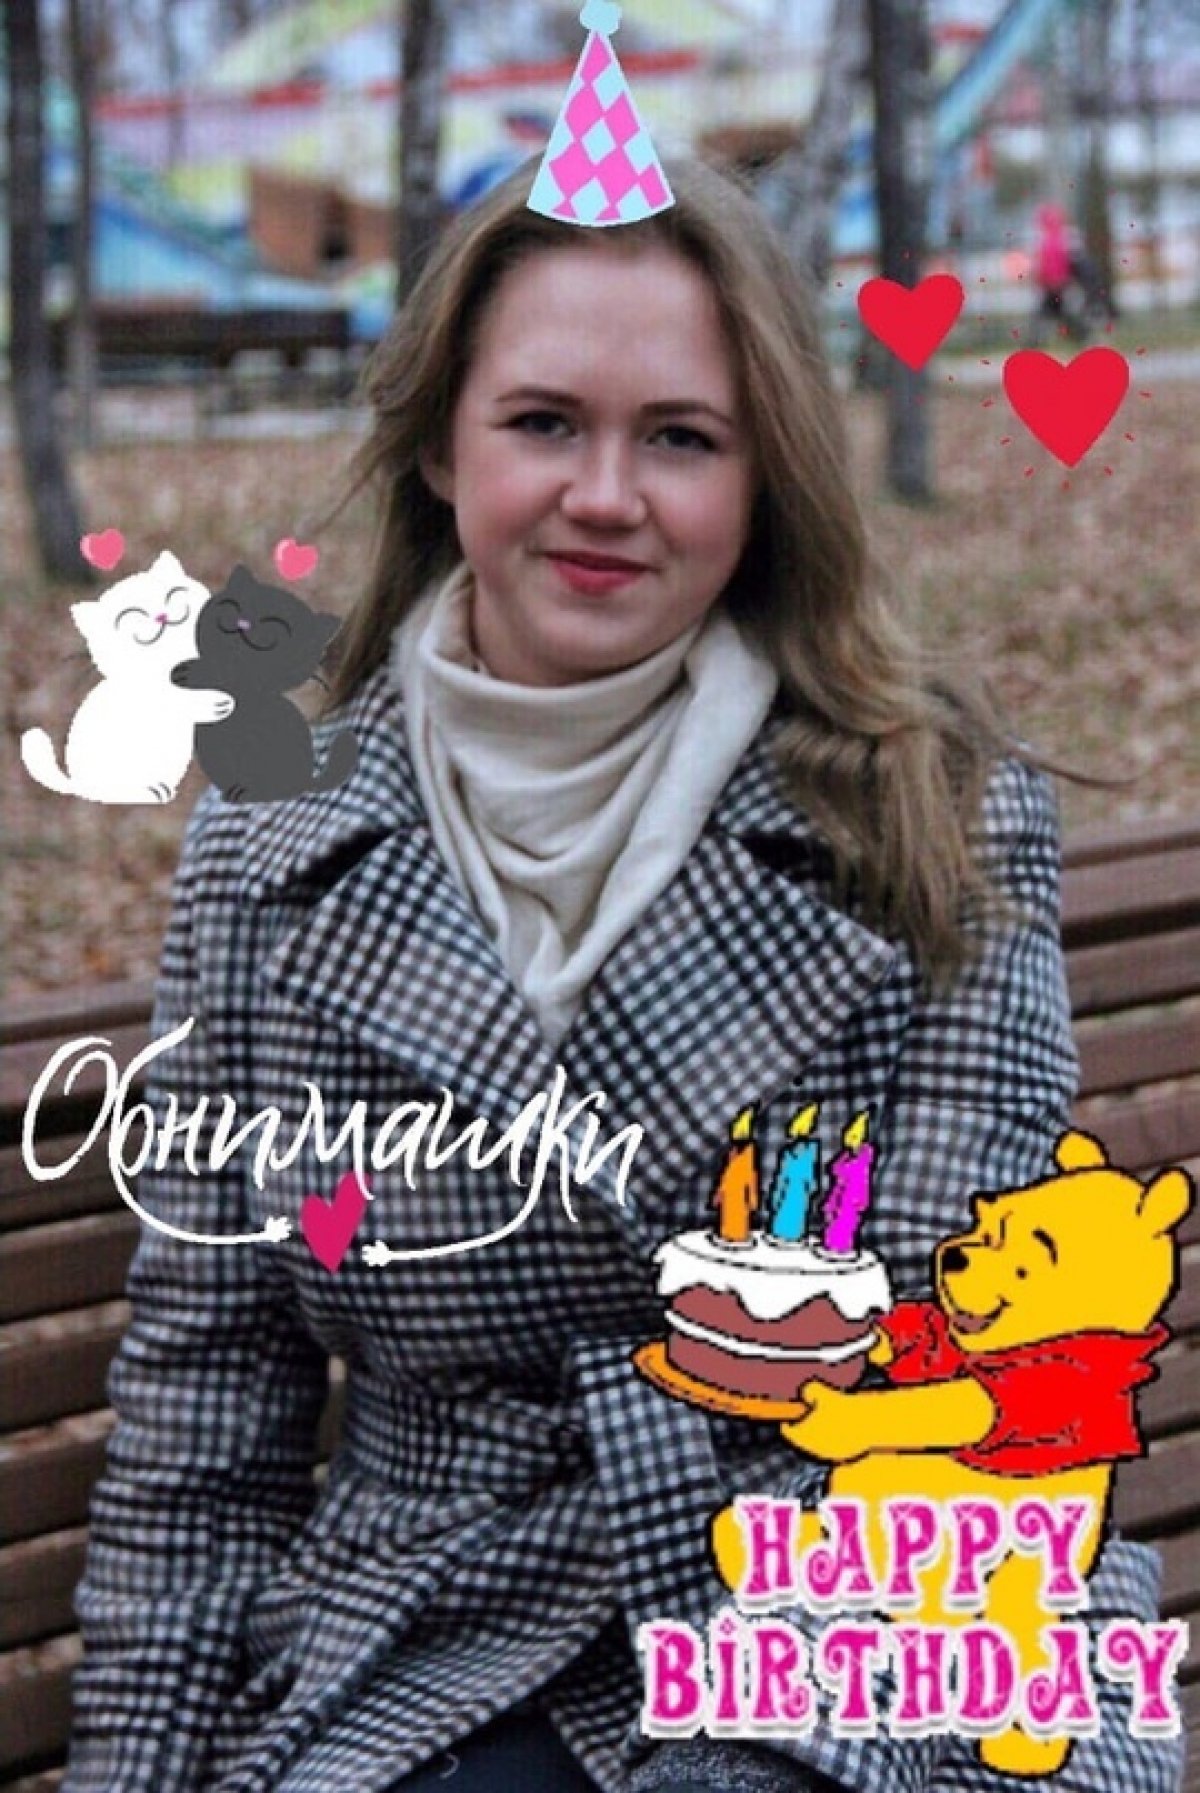 💐Дорогие друзья, сегодня празднует свой день рождения руководитель комиссии по качеству образования, Татьяна Меркушева